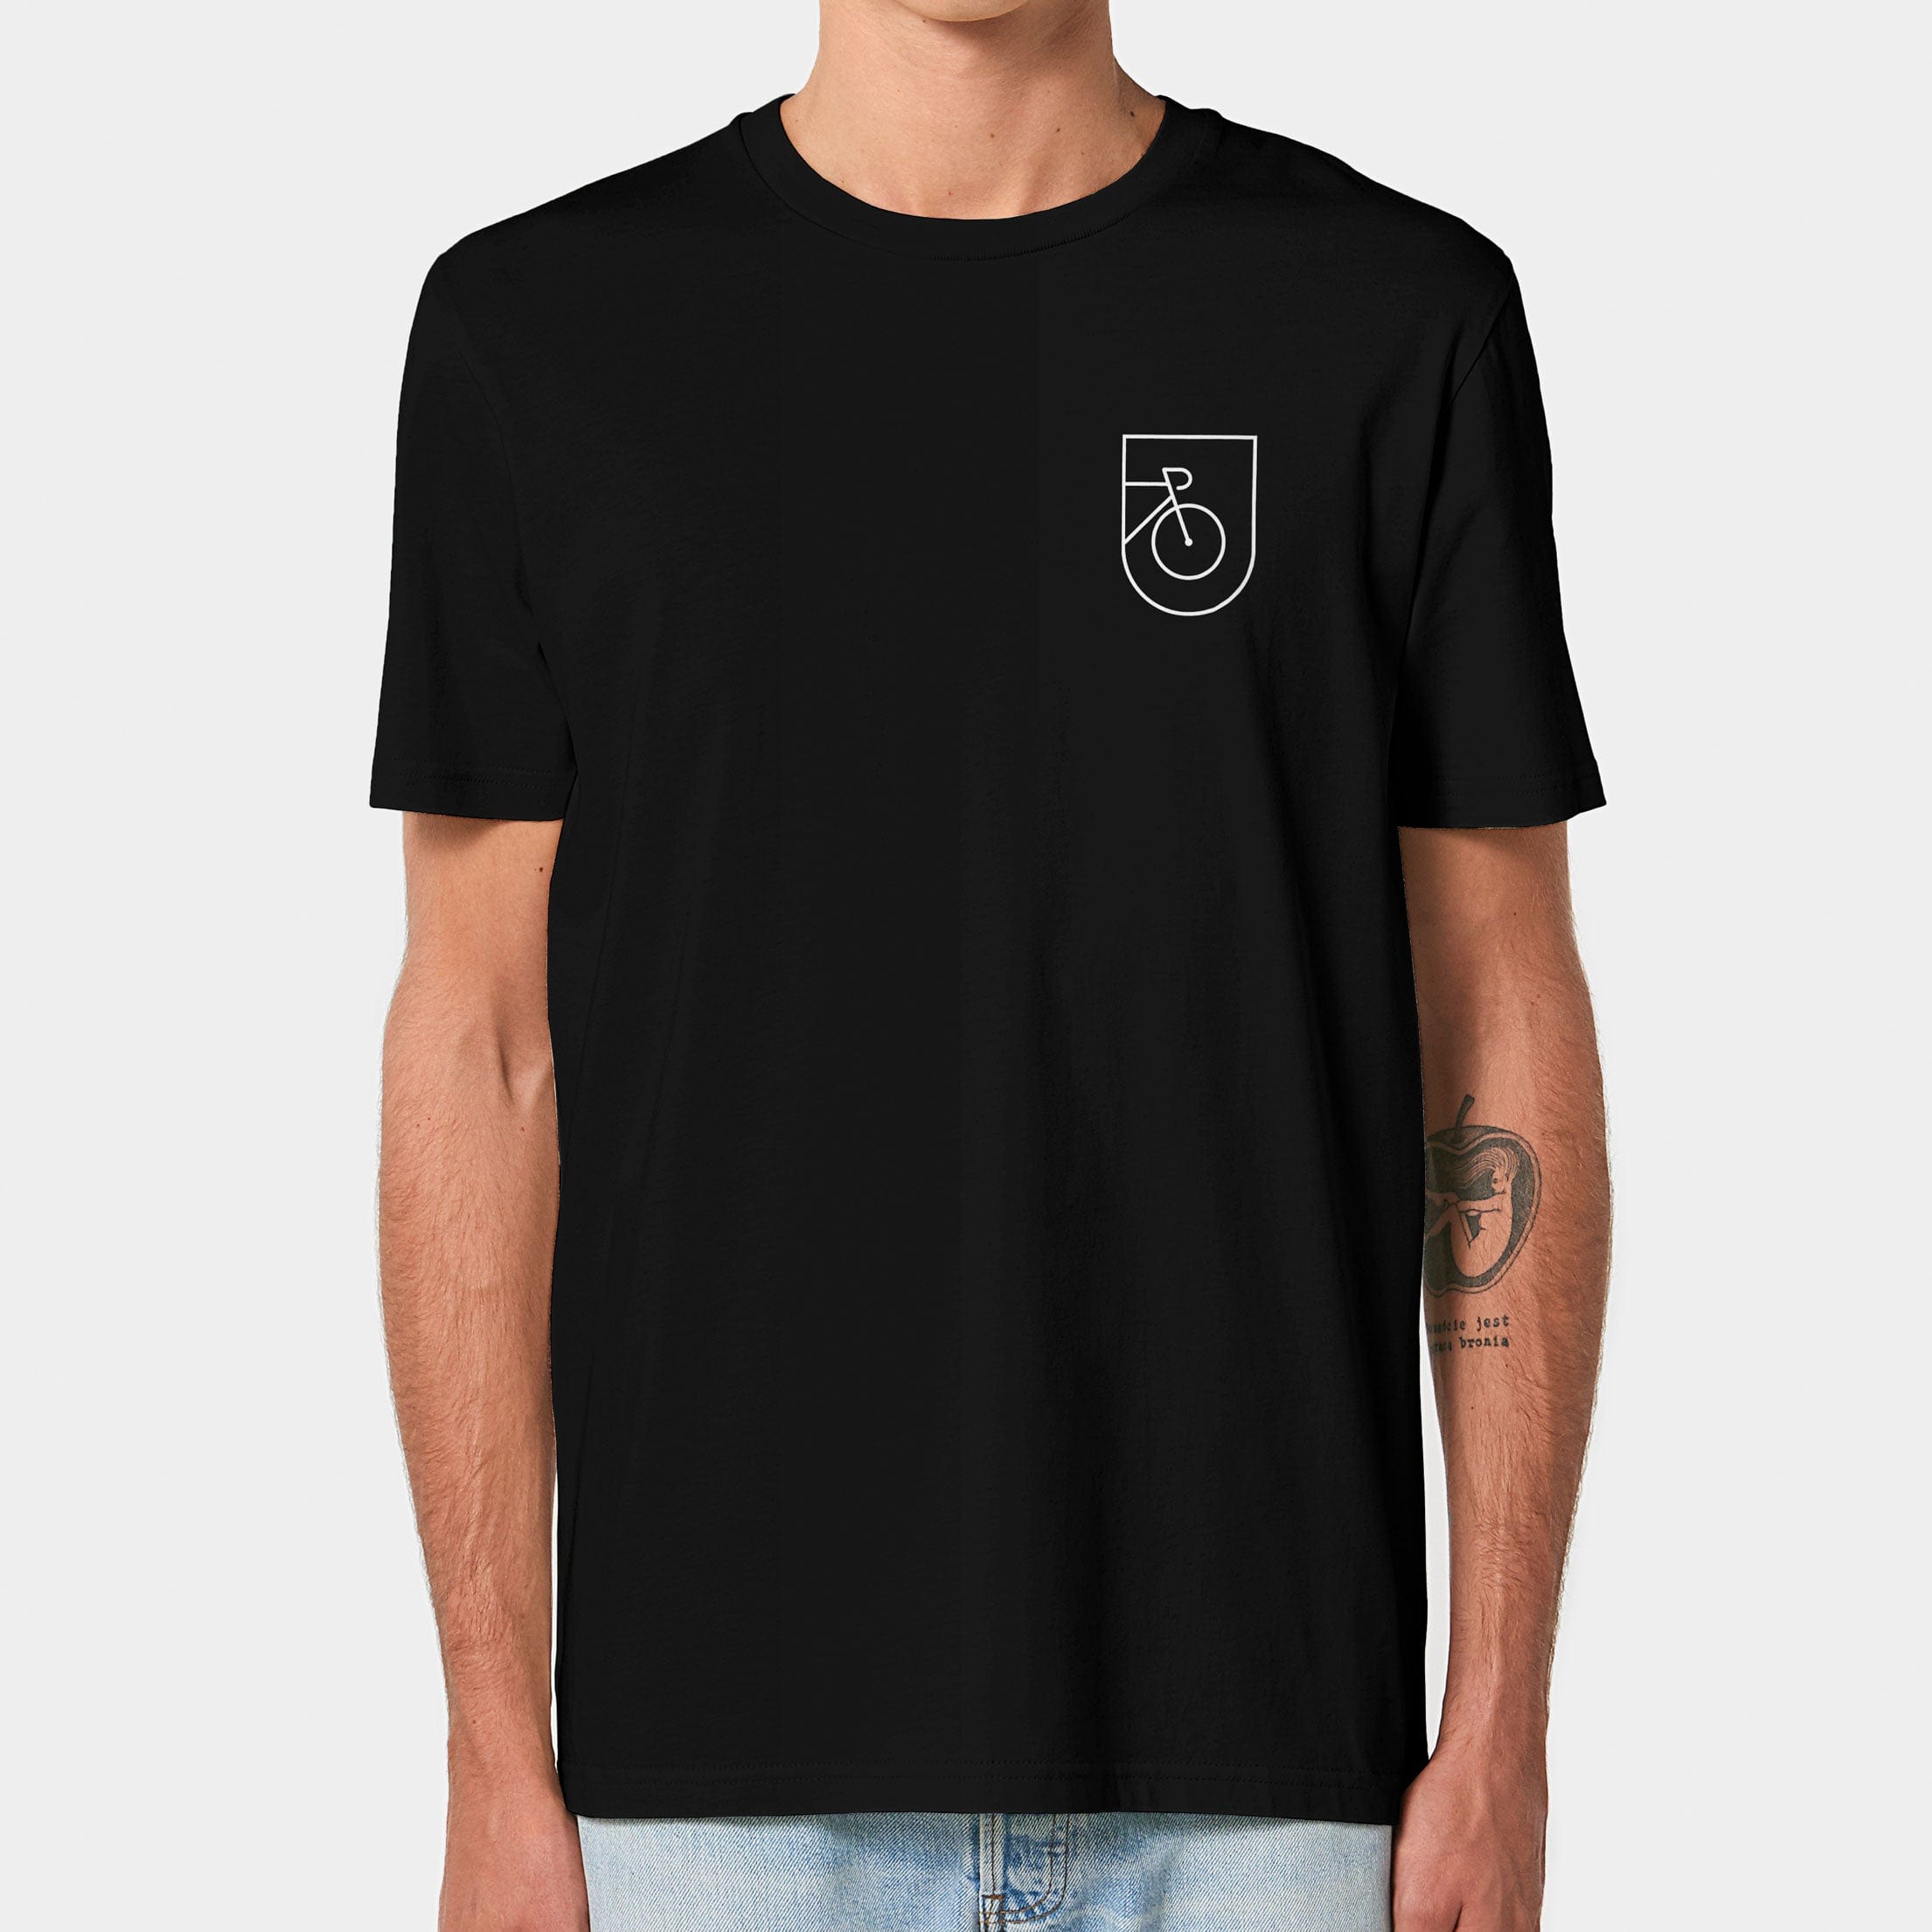 HEITER & LÄSSIG T-Shirt "Rad" XXS / schwarz - aus nachhaltiger und fairer Produktion